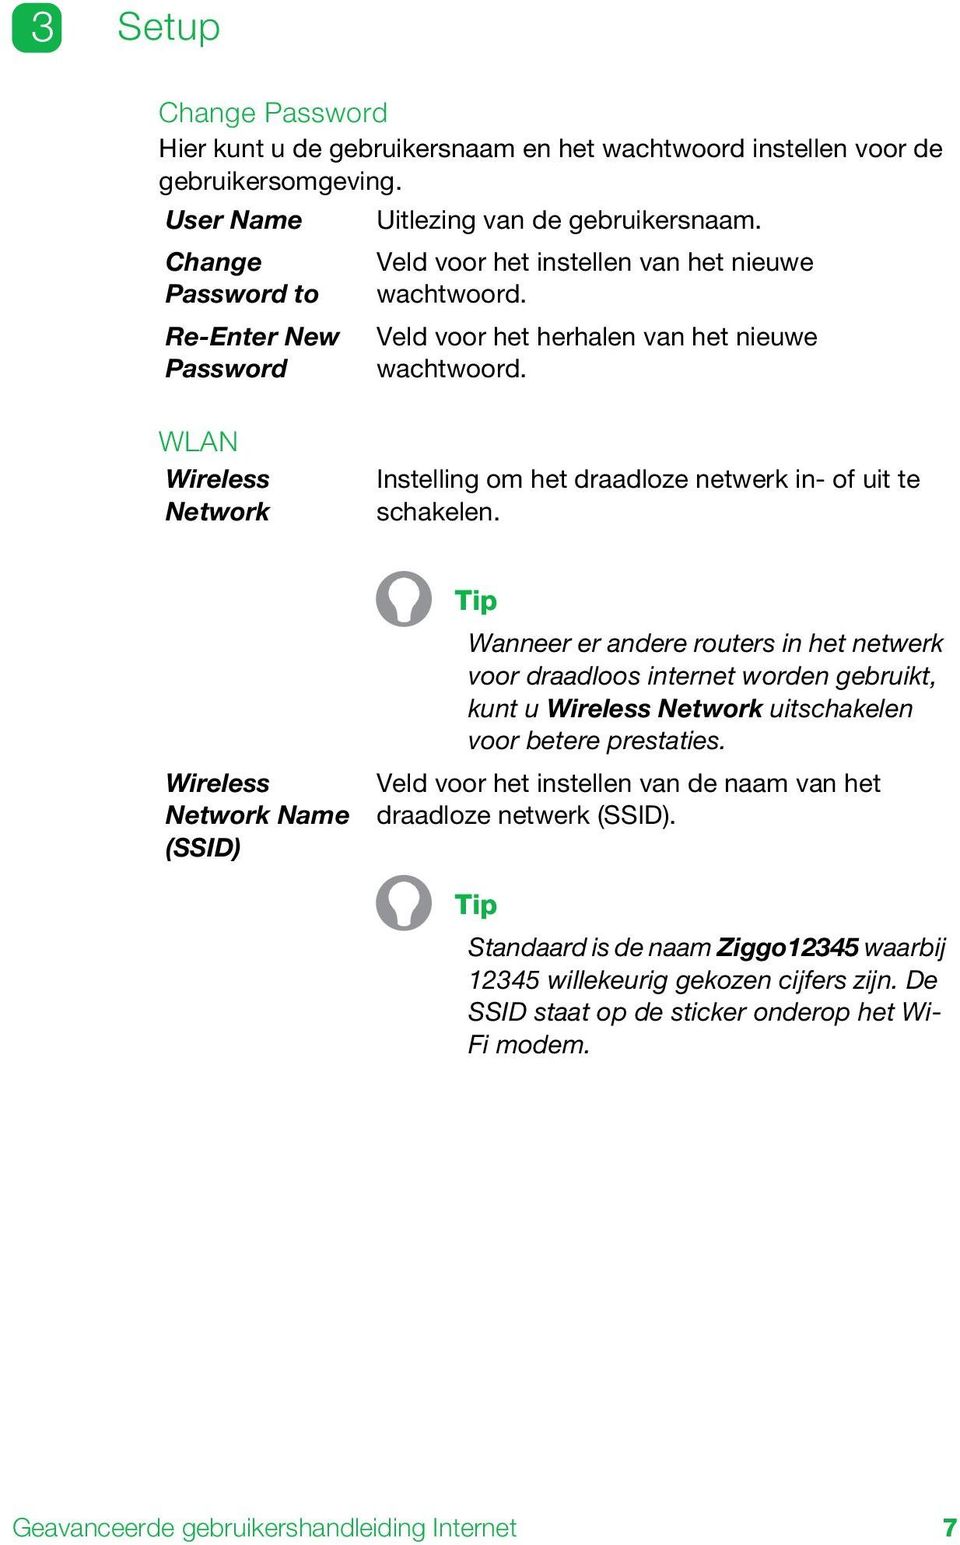 WLAN Wireless Network Instelling om het draadloze netwerk in- of uit te schakelen.